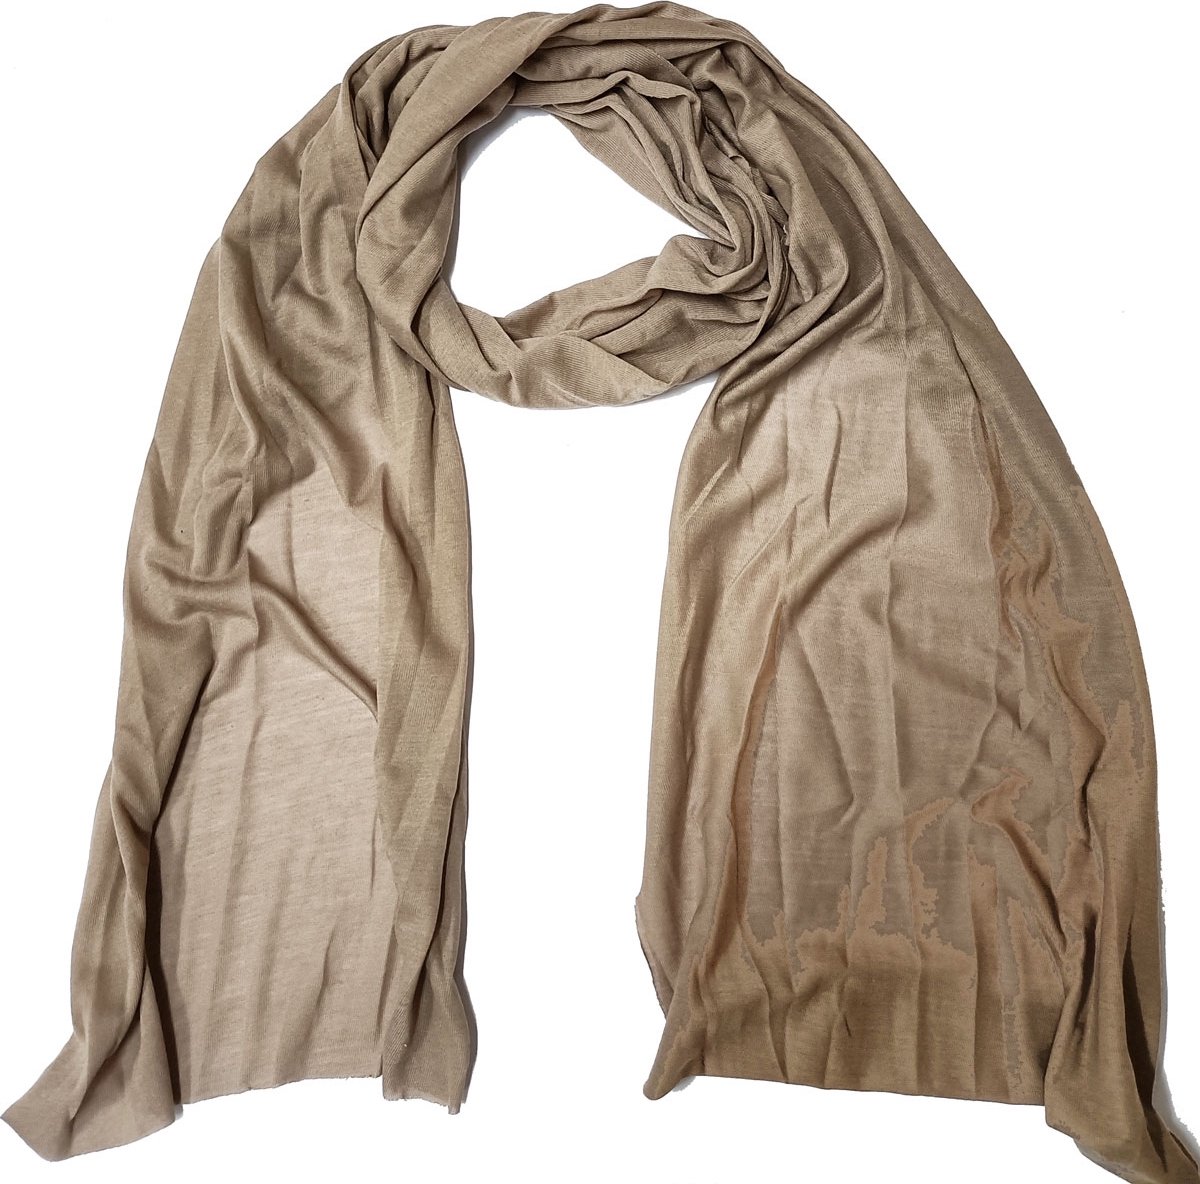 Bruine sjaal gemaakt van zacht viscose - 170 x 45 Centimeter - Najaarscollectie - Damesdingetjes